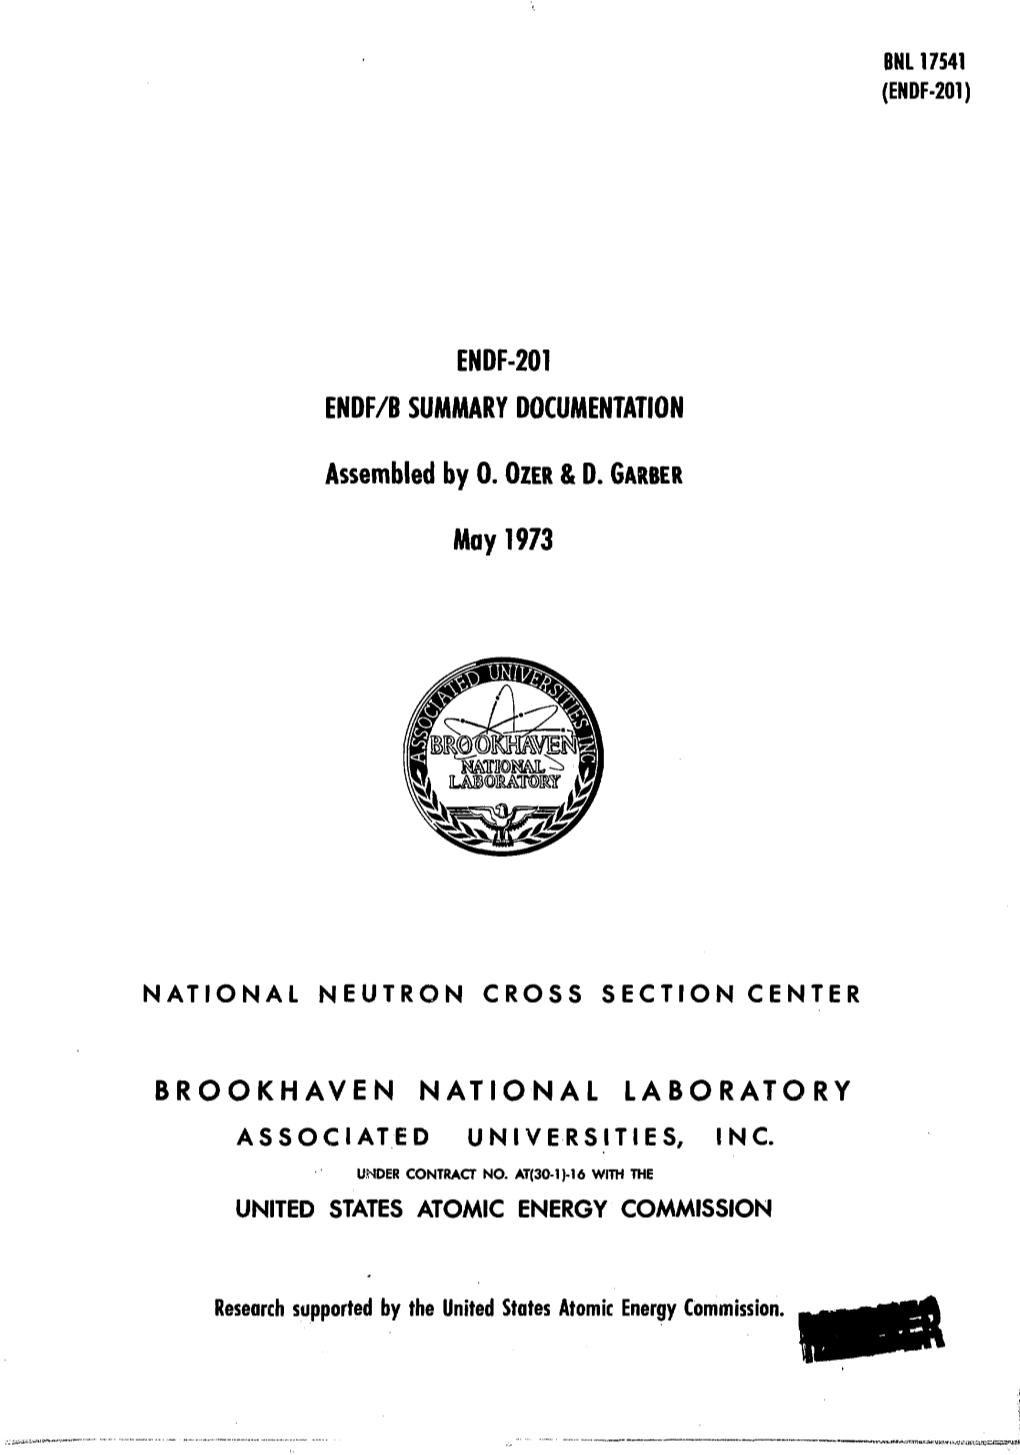 National Neutron Cross Section Center